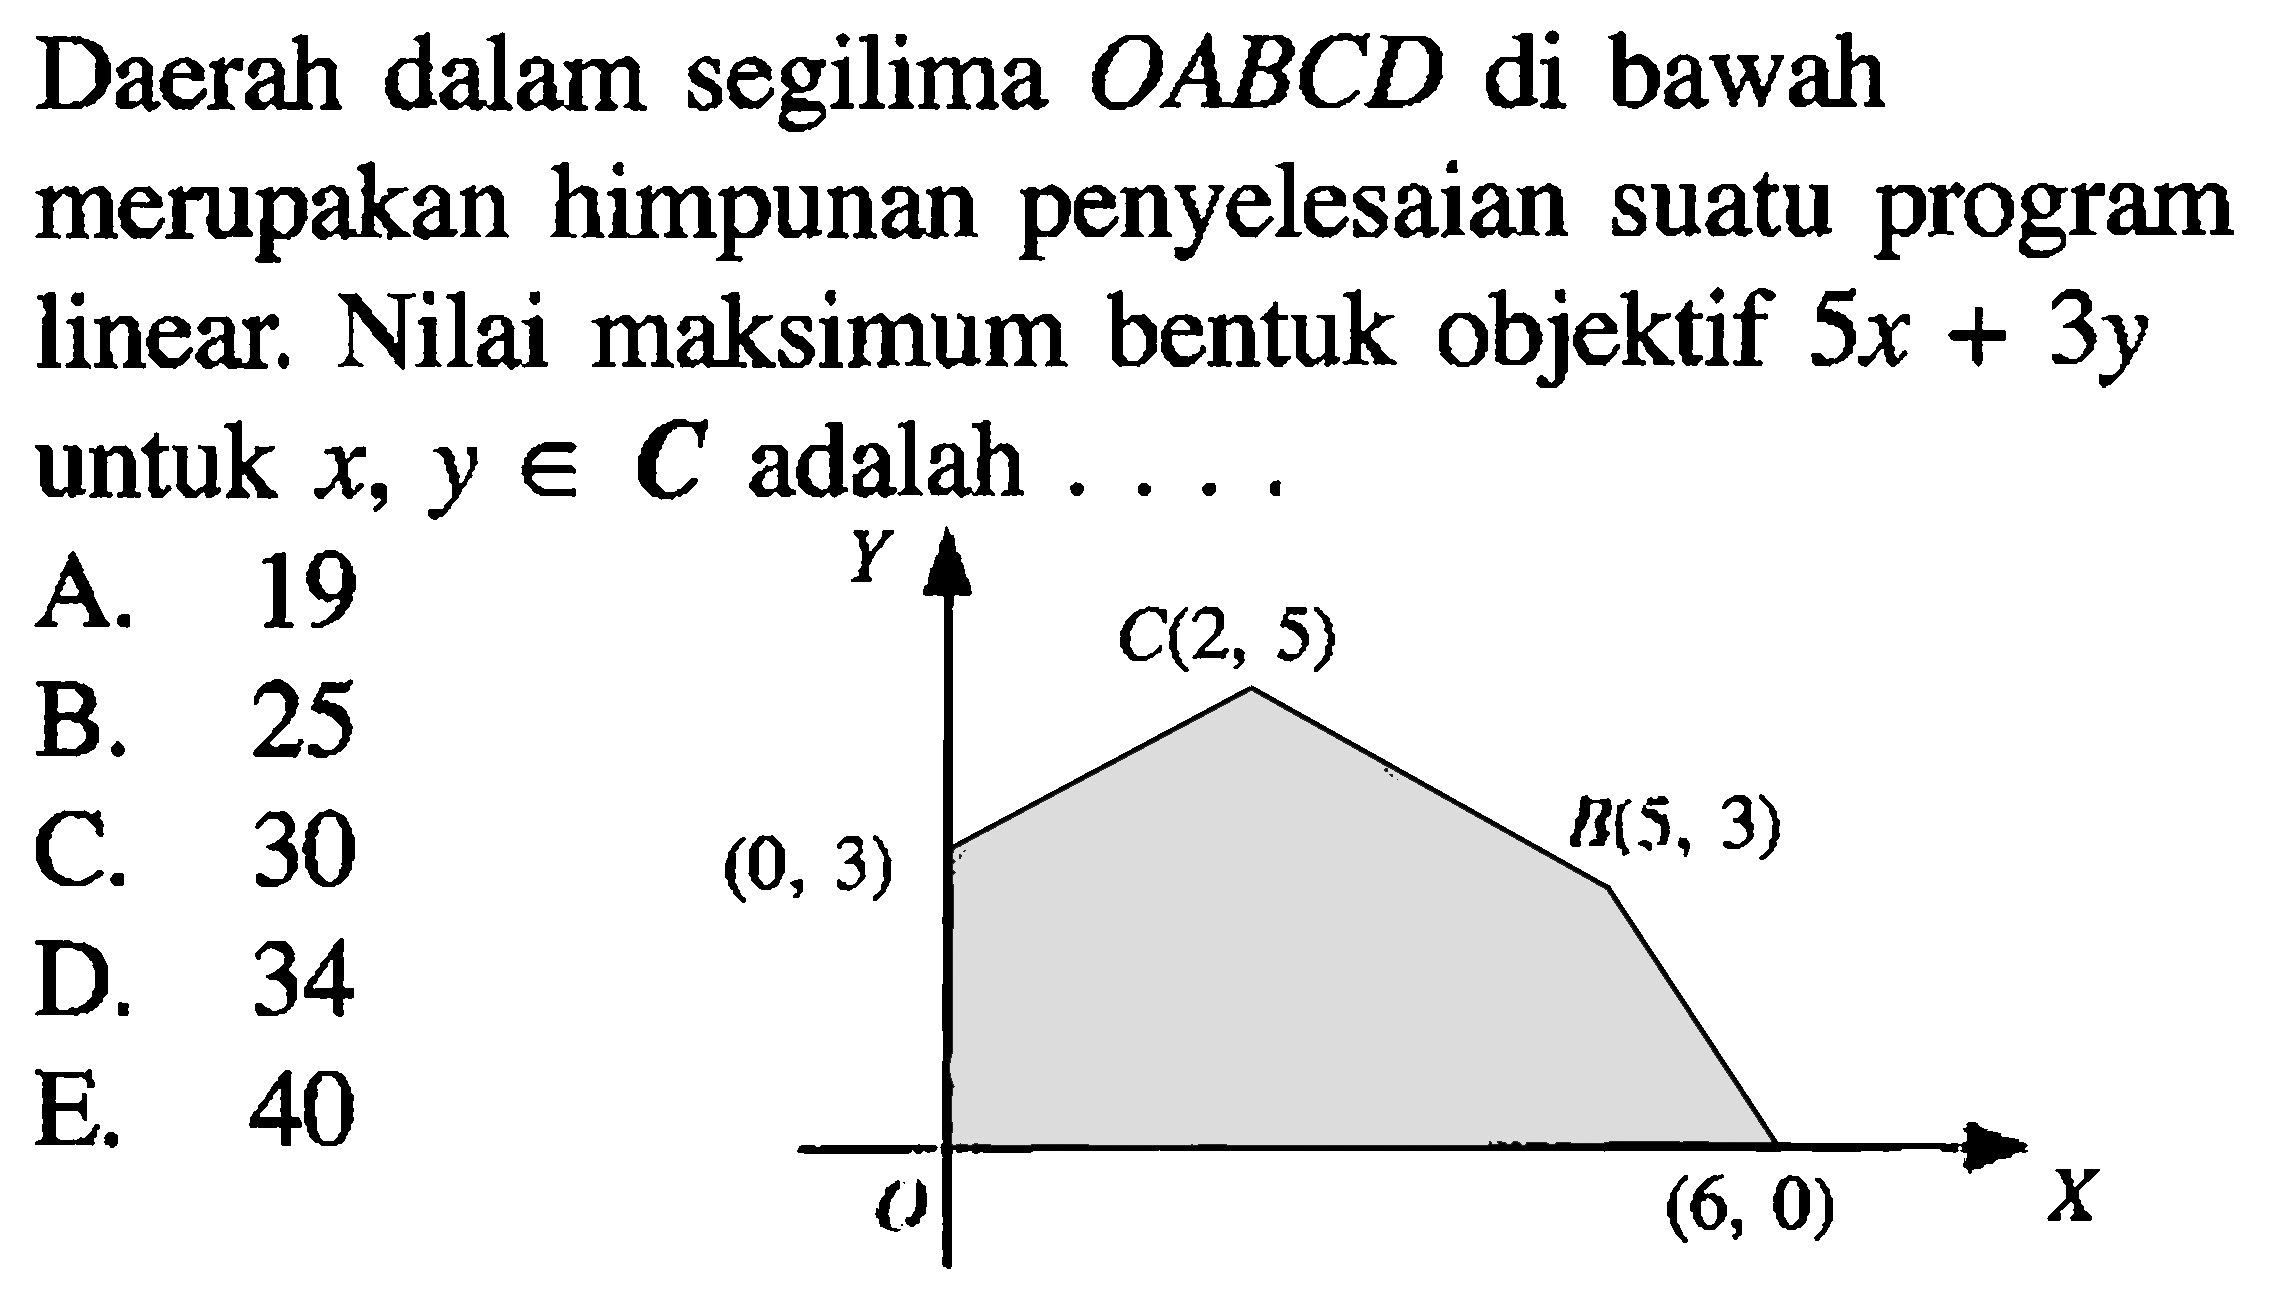 Daerah dalam segilima OABCD di bawah merupakan himpunan penyelesaian suatu program linear. Nilai maksimum bentuk objektif 5x+3y untuk x, y e C adalah . . . . Y C(2, 5) B(5, 3) (0, 3) 0 (6, 0) X